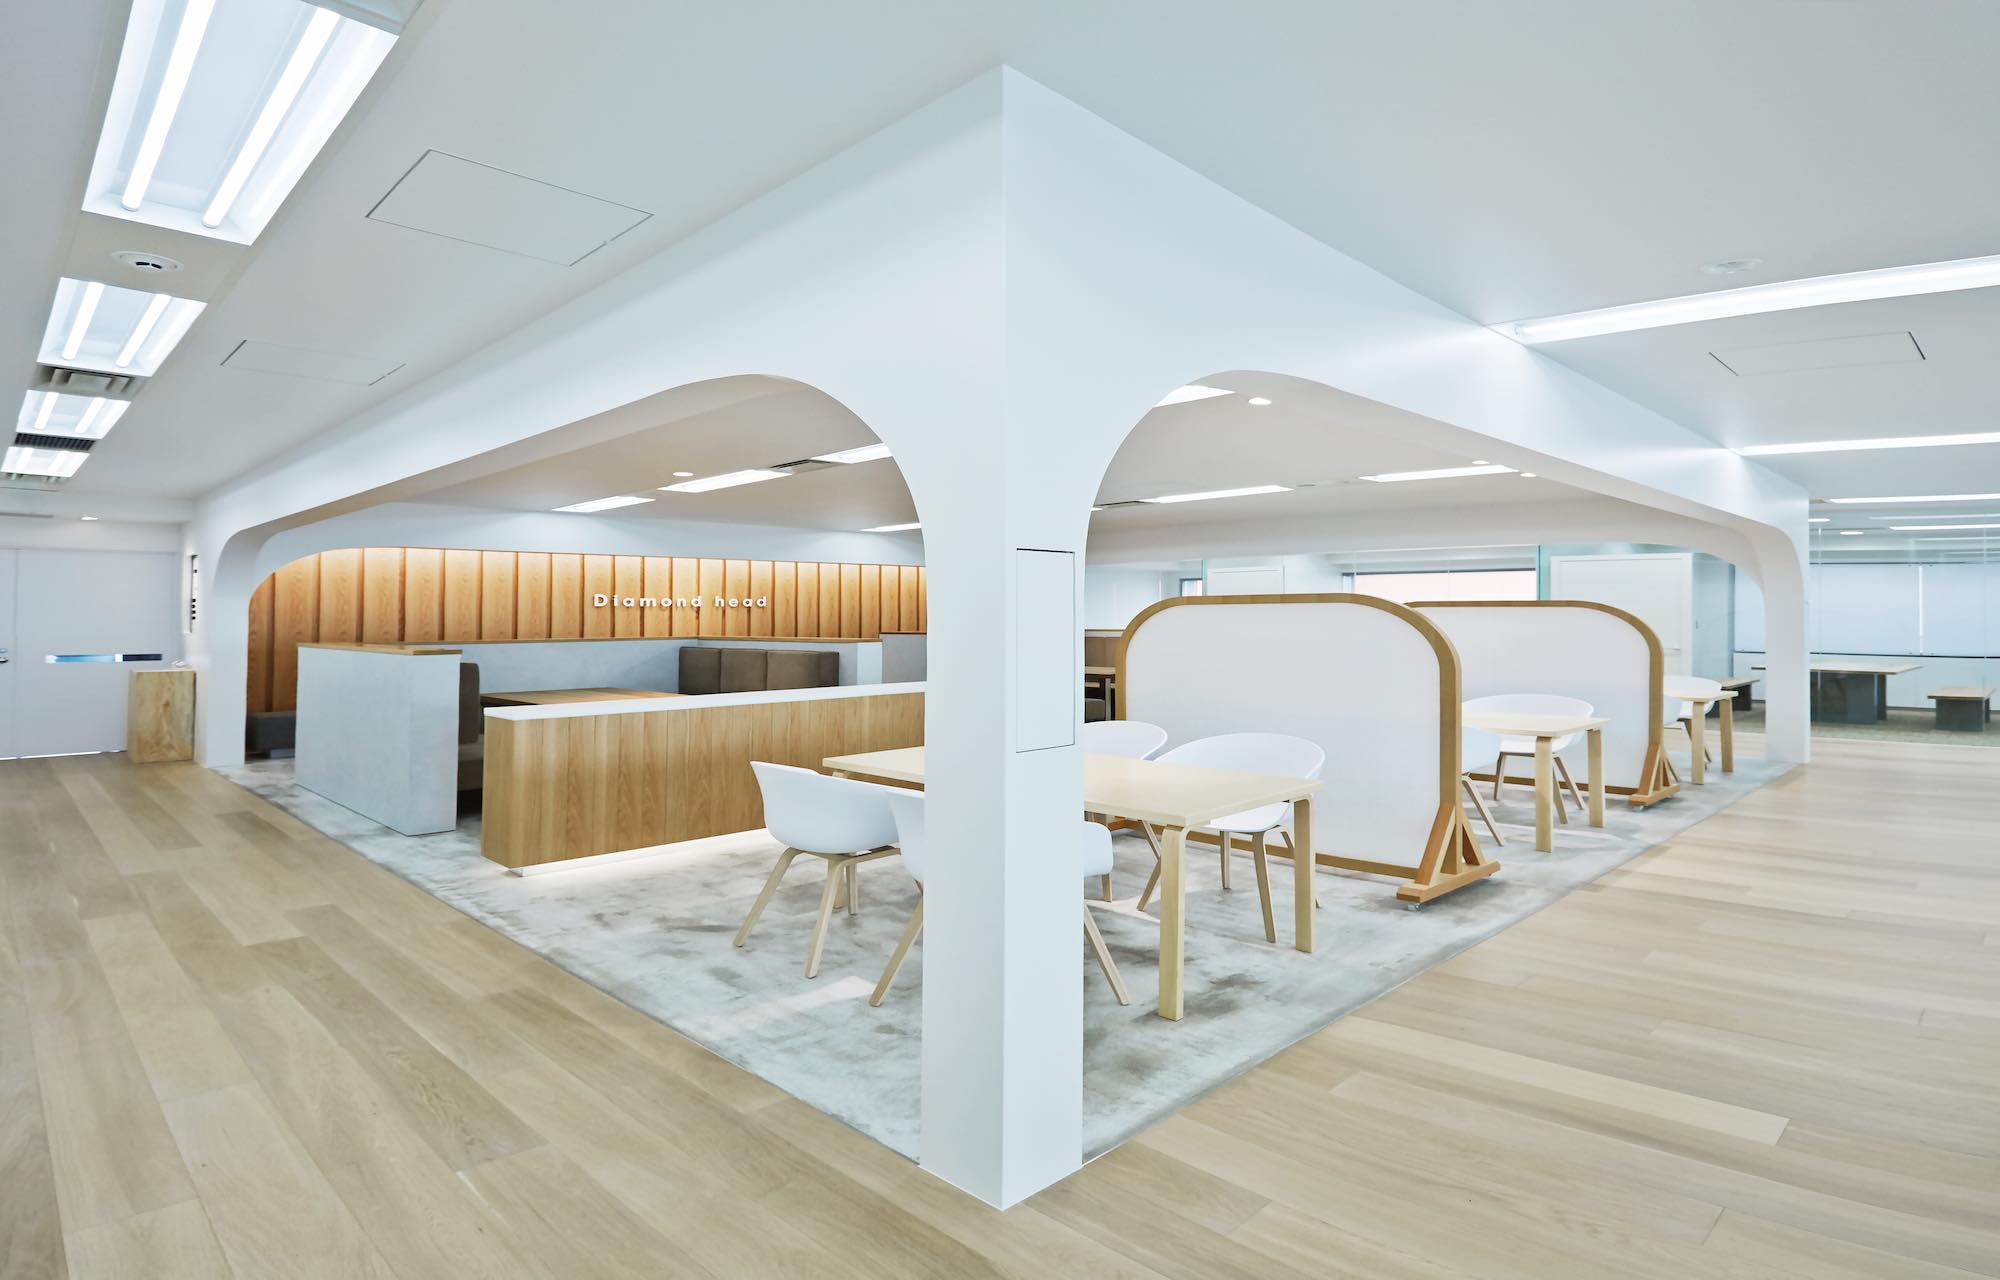 ダイアモンドヘッド株式会社 Tokyo Office Meeting Space デザイン・レイアウト事例